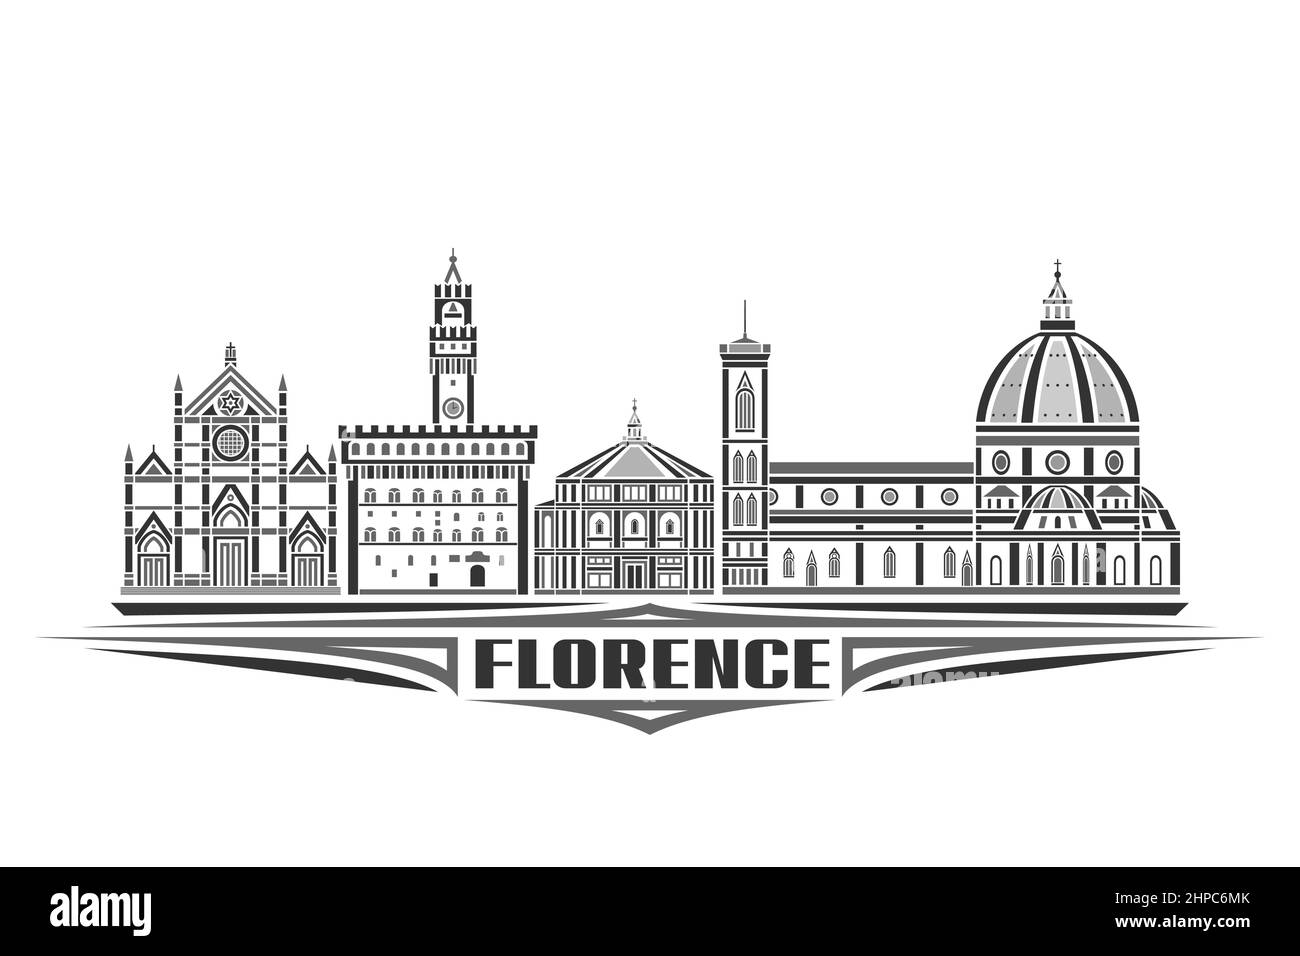 Illustrazione vettoriale di Firenze, poster orizzontale monocromatico con disegno lineare famoso paesaggio cittadino di firenze, concetto artistico urbano con le decorative Illustrazione Vettoriale